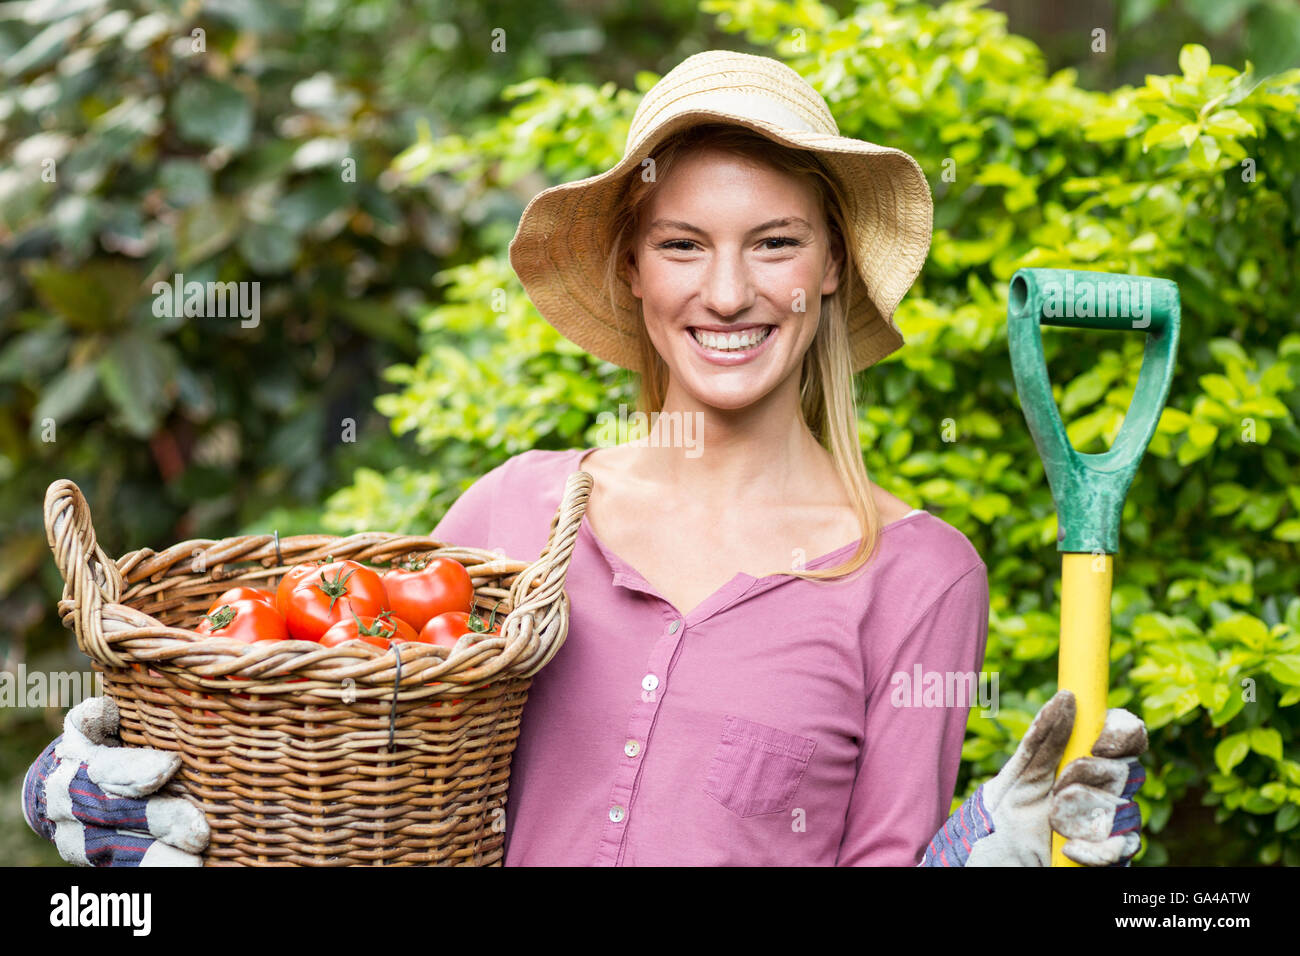 Giardiniere femmina holding cestello di pomodoro e attrezzo di lavoro Foto Stock